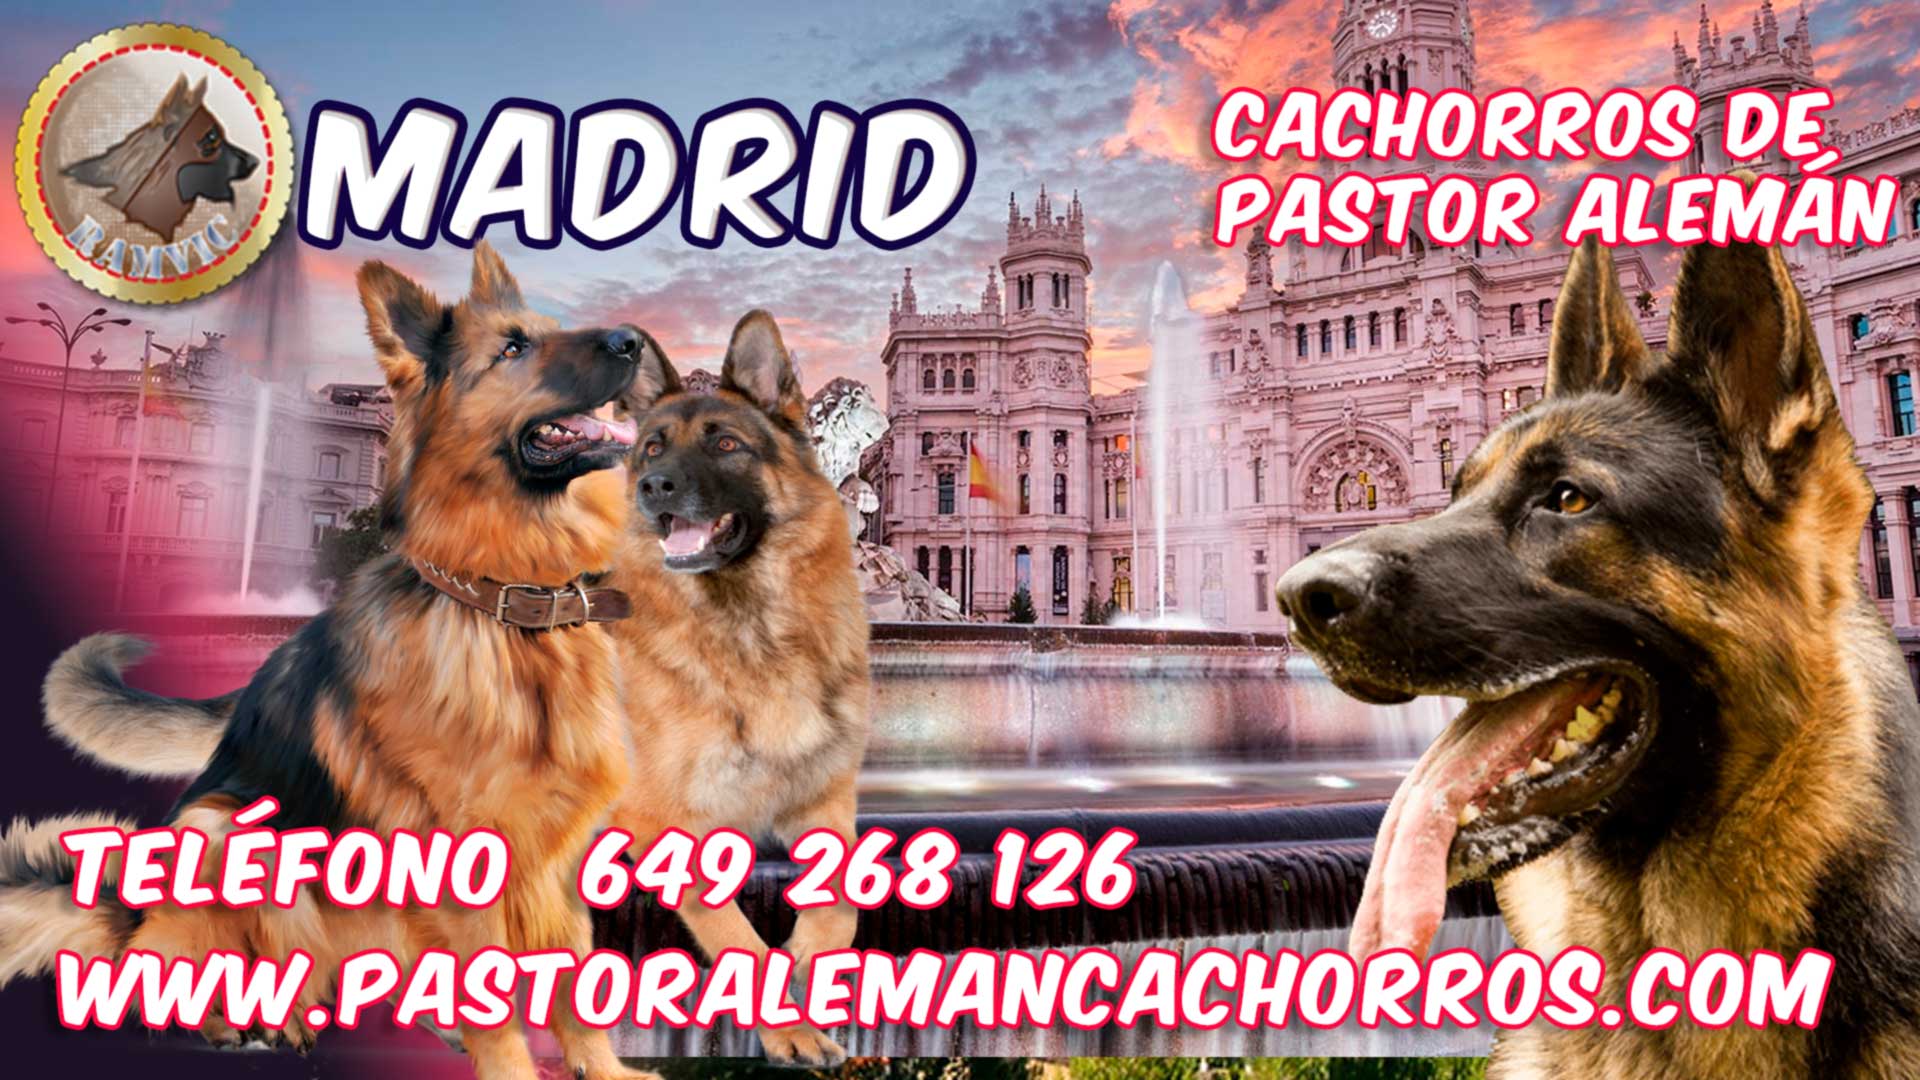 Cachorros de Pastor Alemán en Madrid